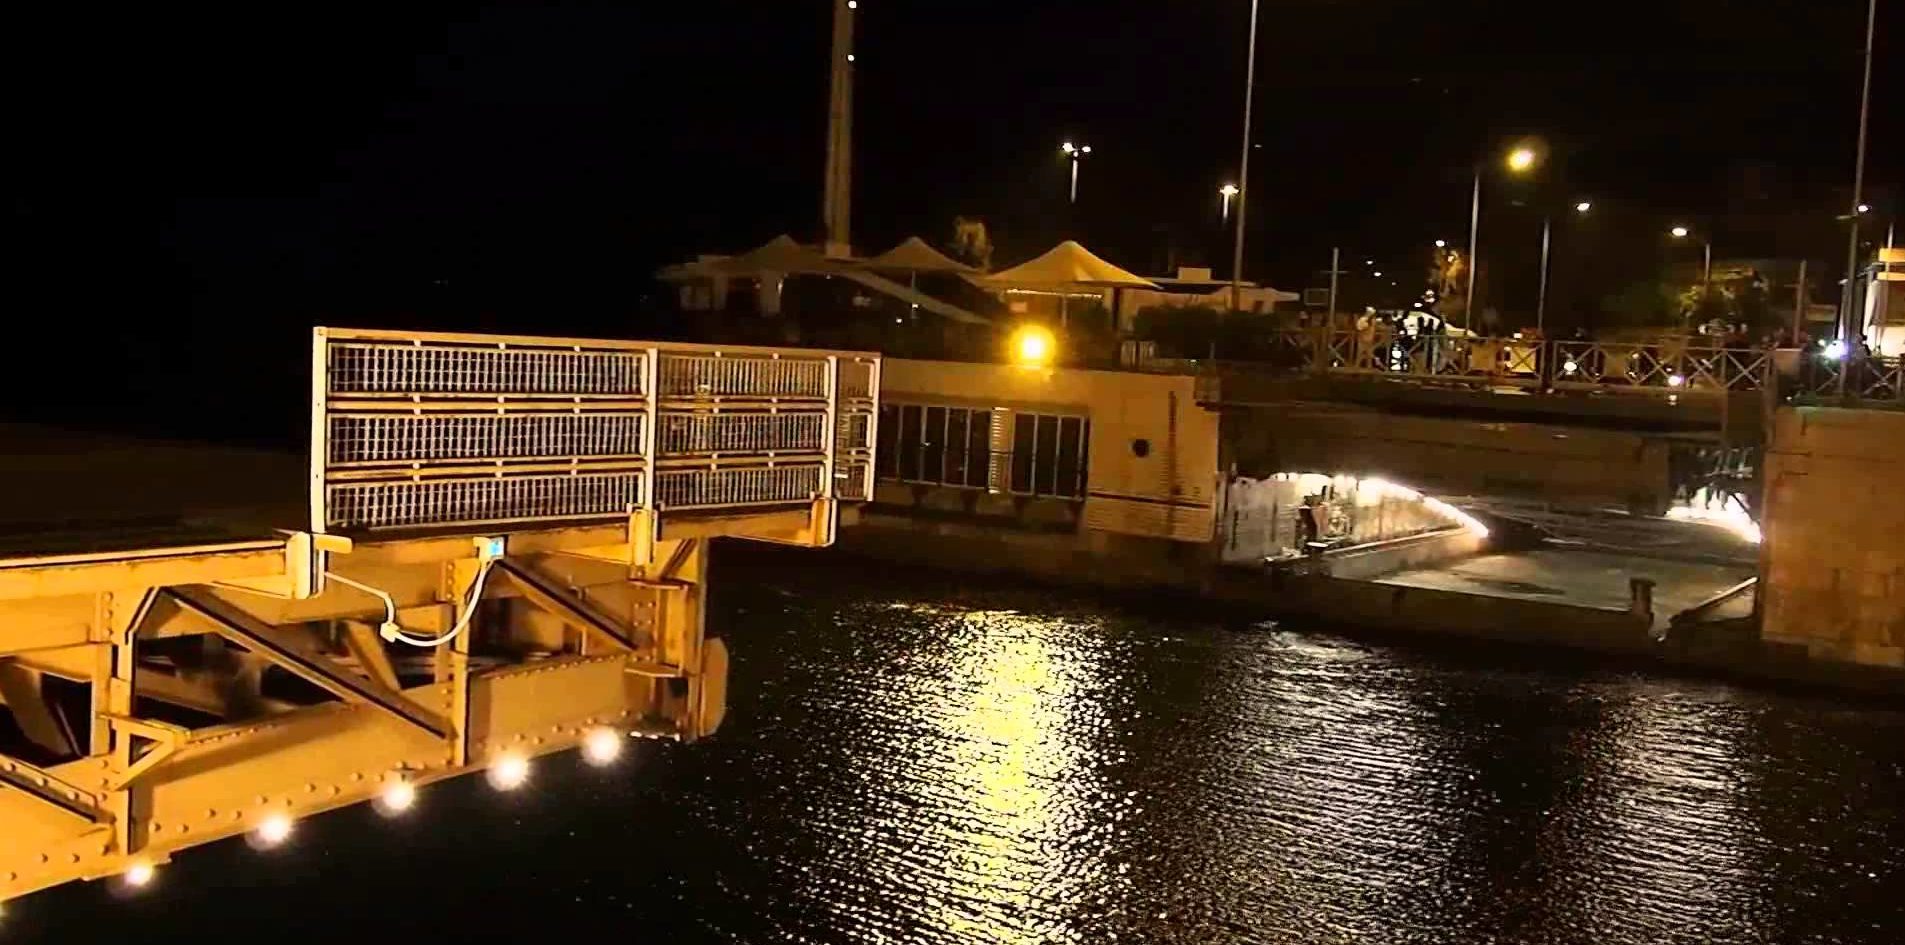 34χρονος έπεσε από τη γέφυρα την ώρα που περνούσε πλοίο